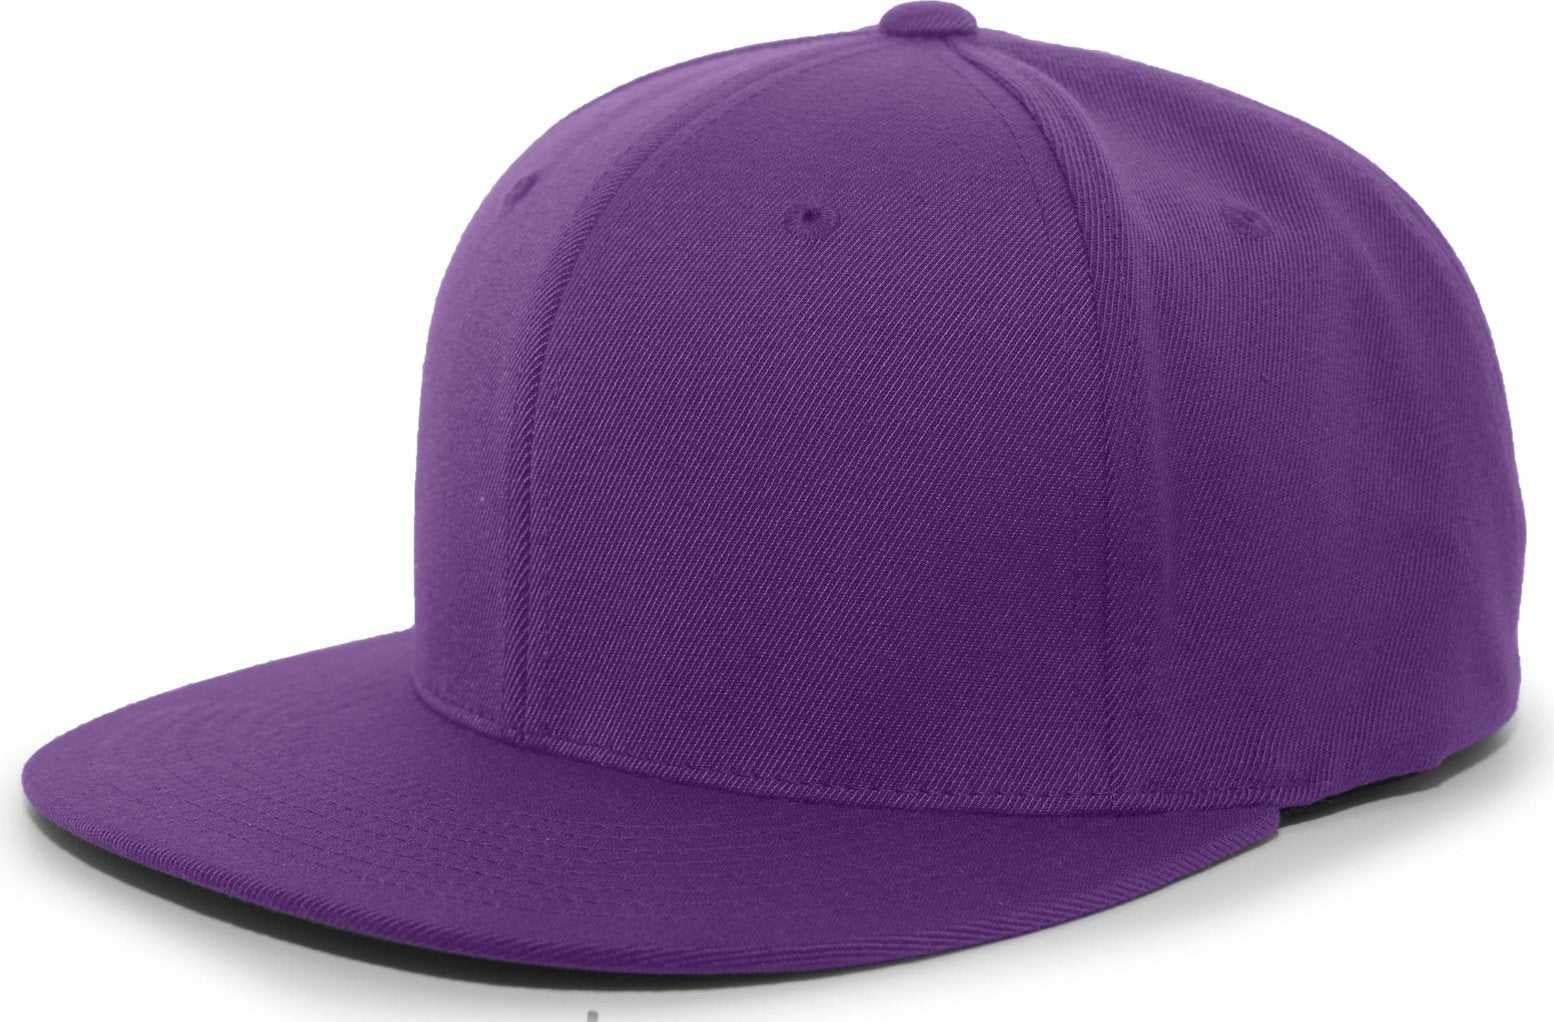 Pacific Headwear 8D5 A/C?ý Performance D-Series Flexfit Cap - Purple - HIT a Double